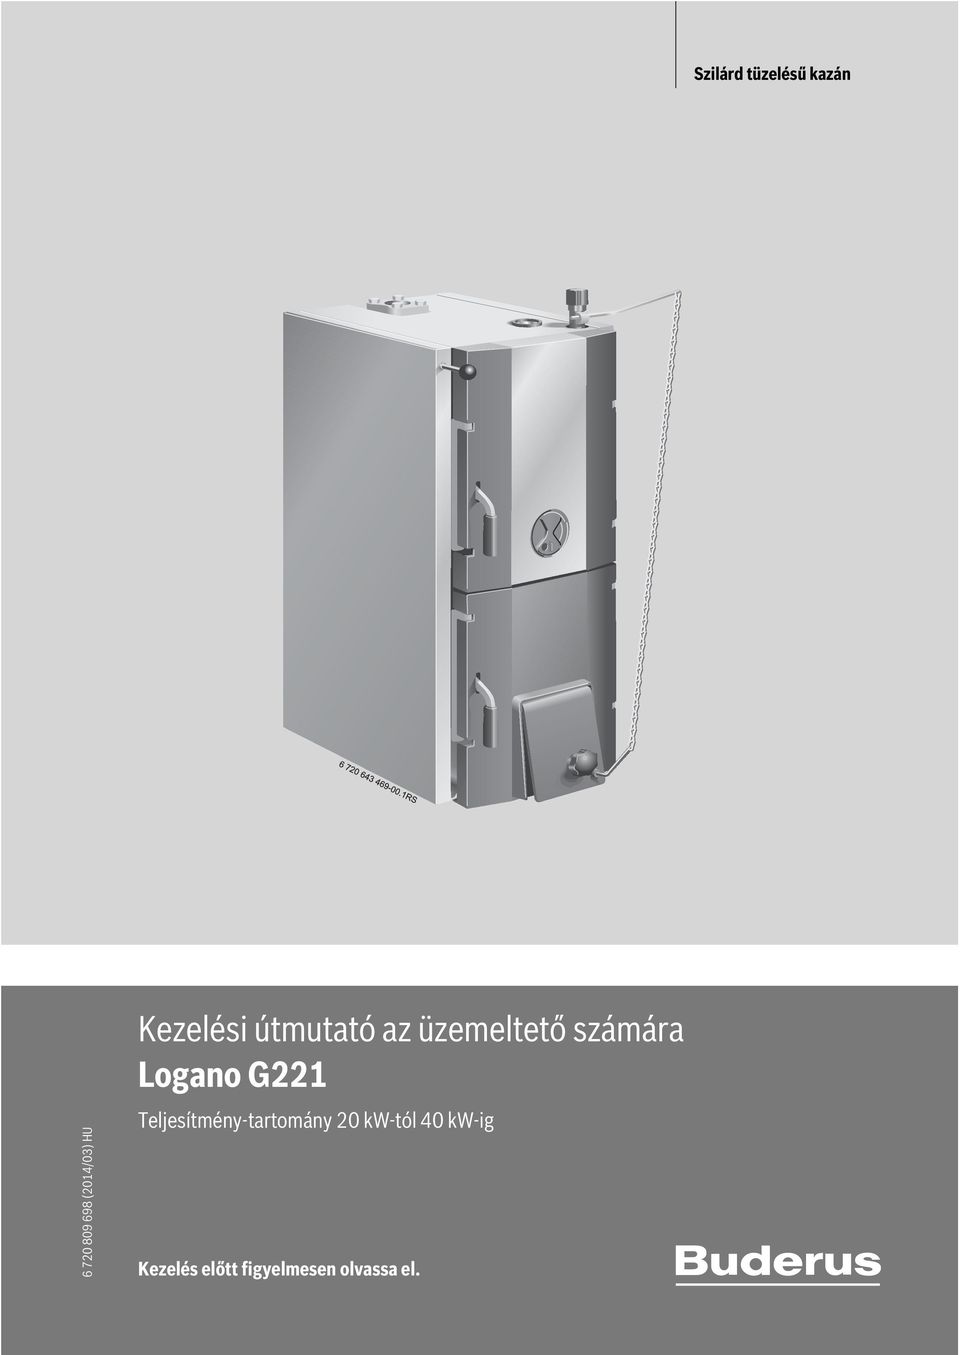 számára Logano G221 Teljesítmény-tartomány 20